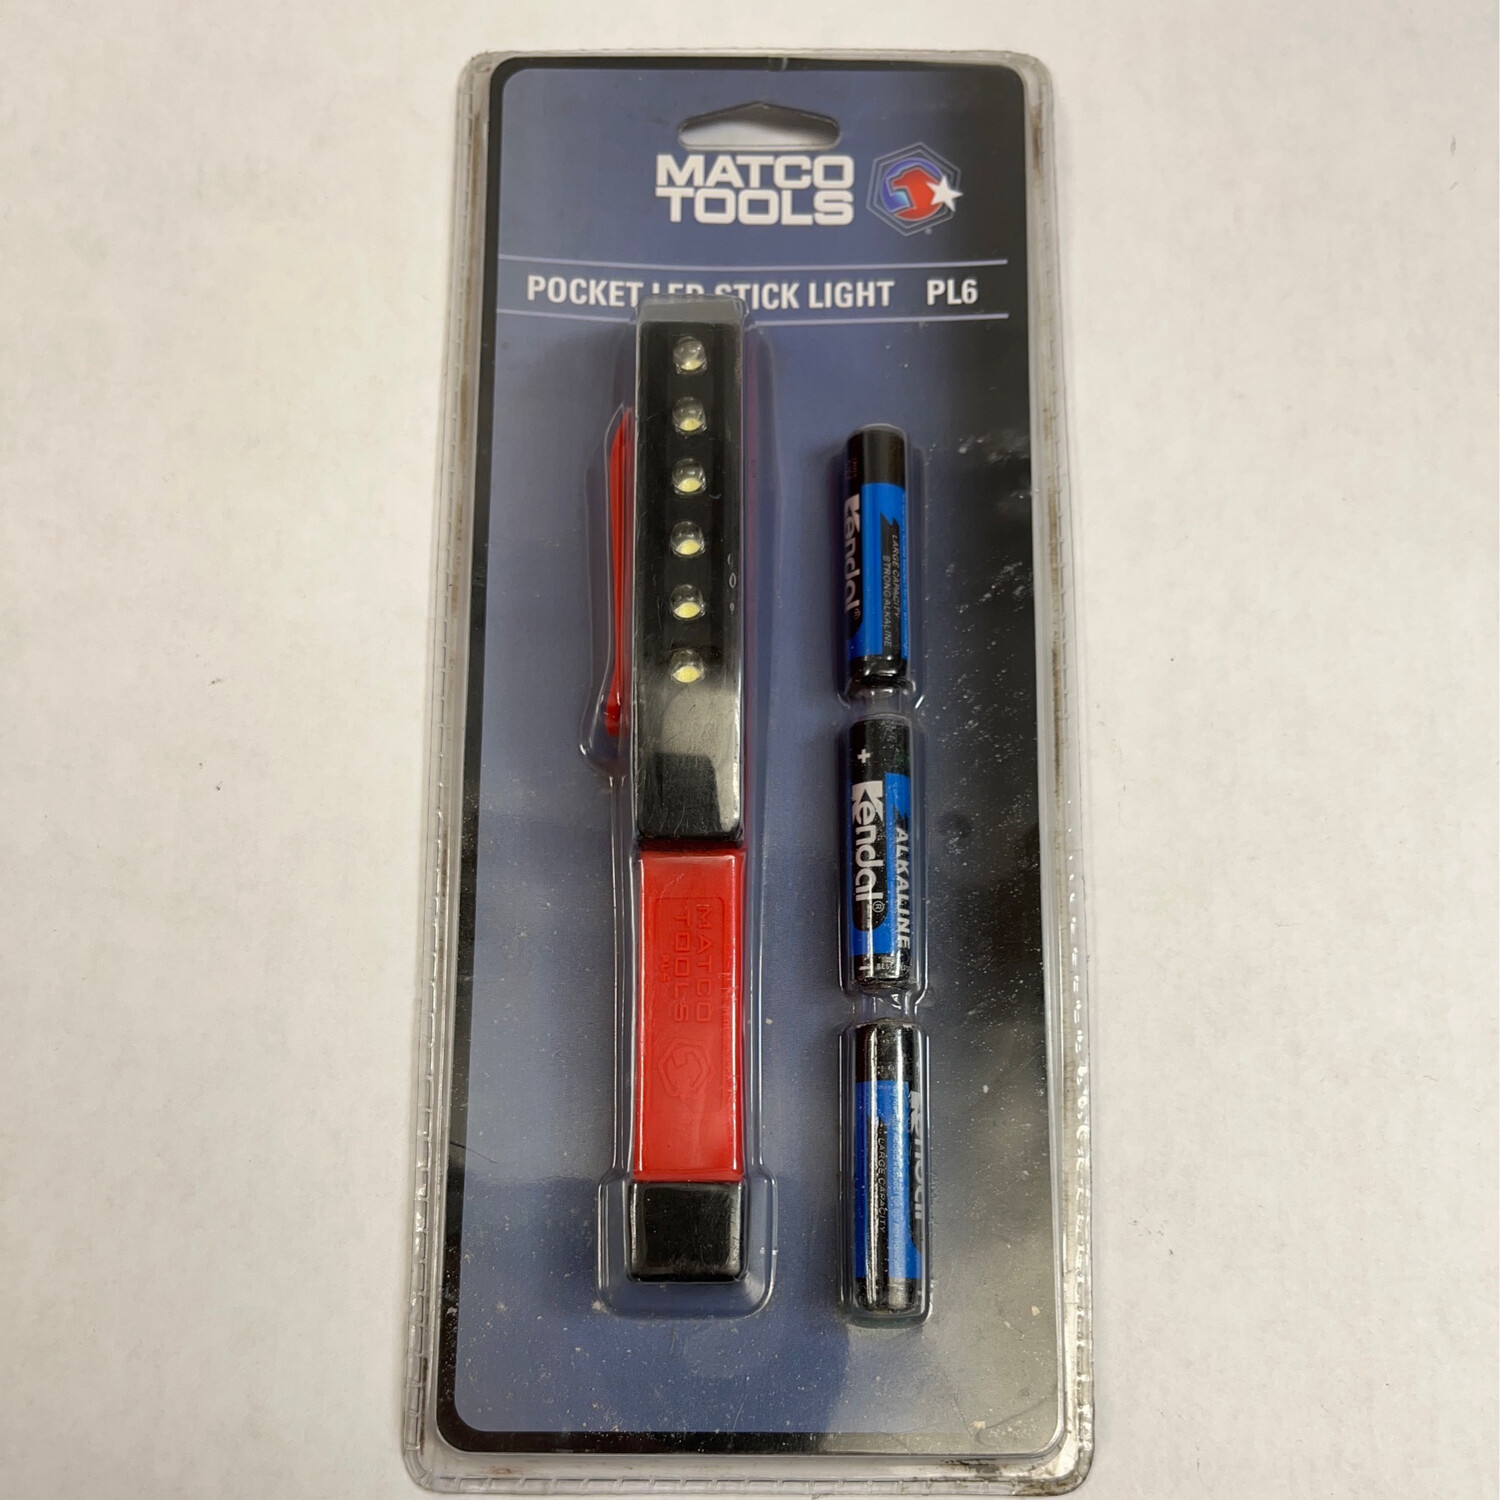 Matco Tools Pocket LED Stick Light, PL6